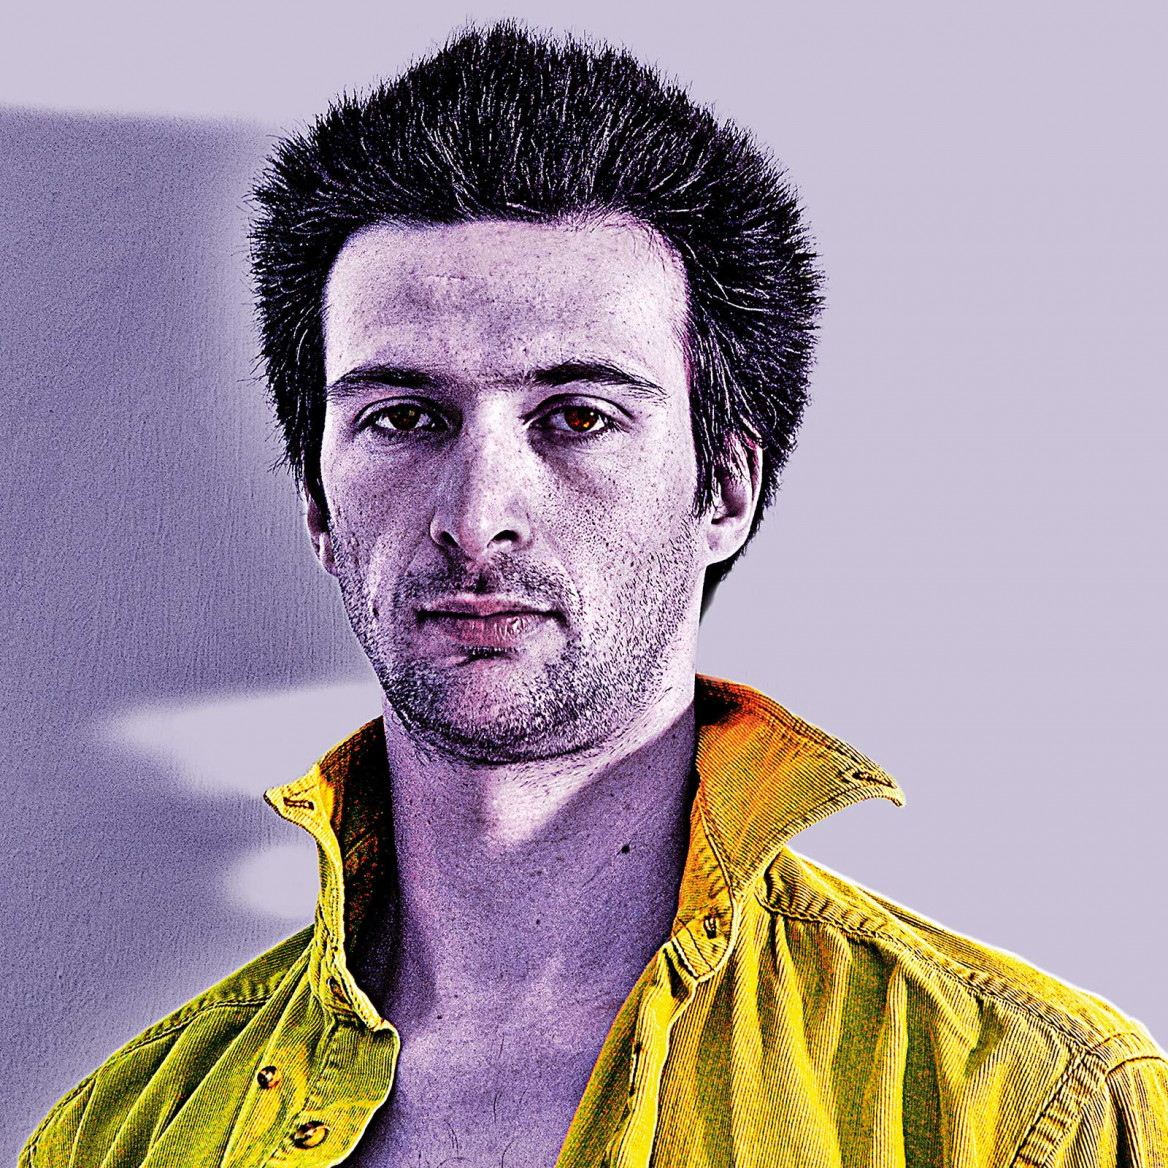 Digital portrait of Schdaeff in violett tones with yellow jackett ; Digitales Porträt von Schdaeff in violetten Tönen und gelber Jacke